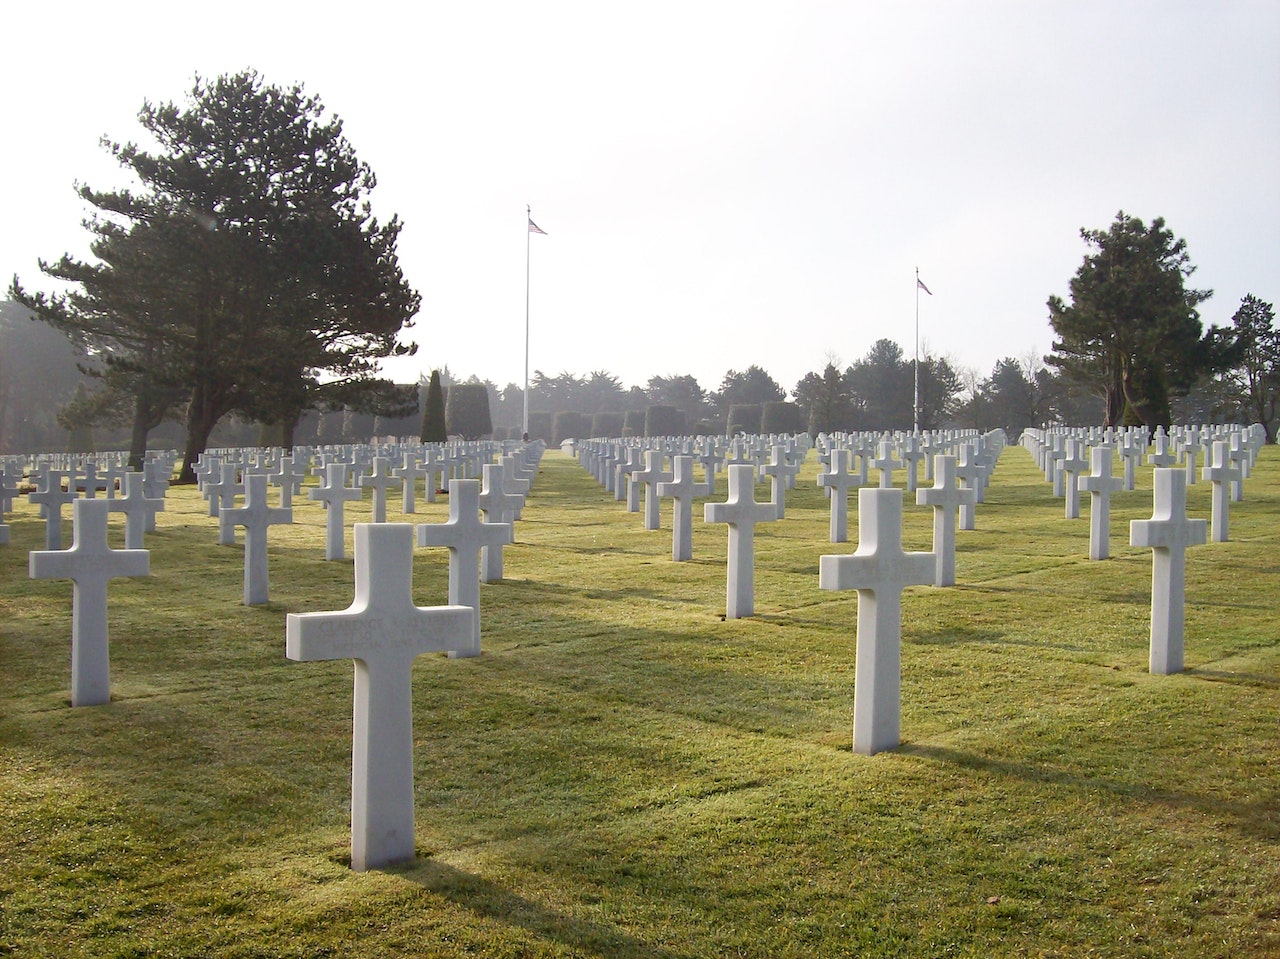 Cemetery Full of White Crosses In Line